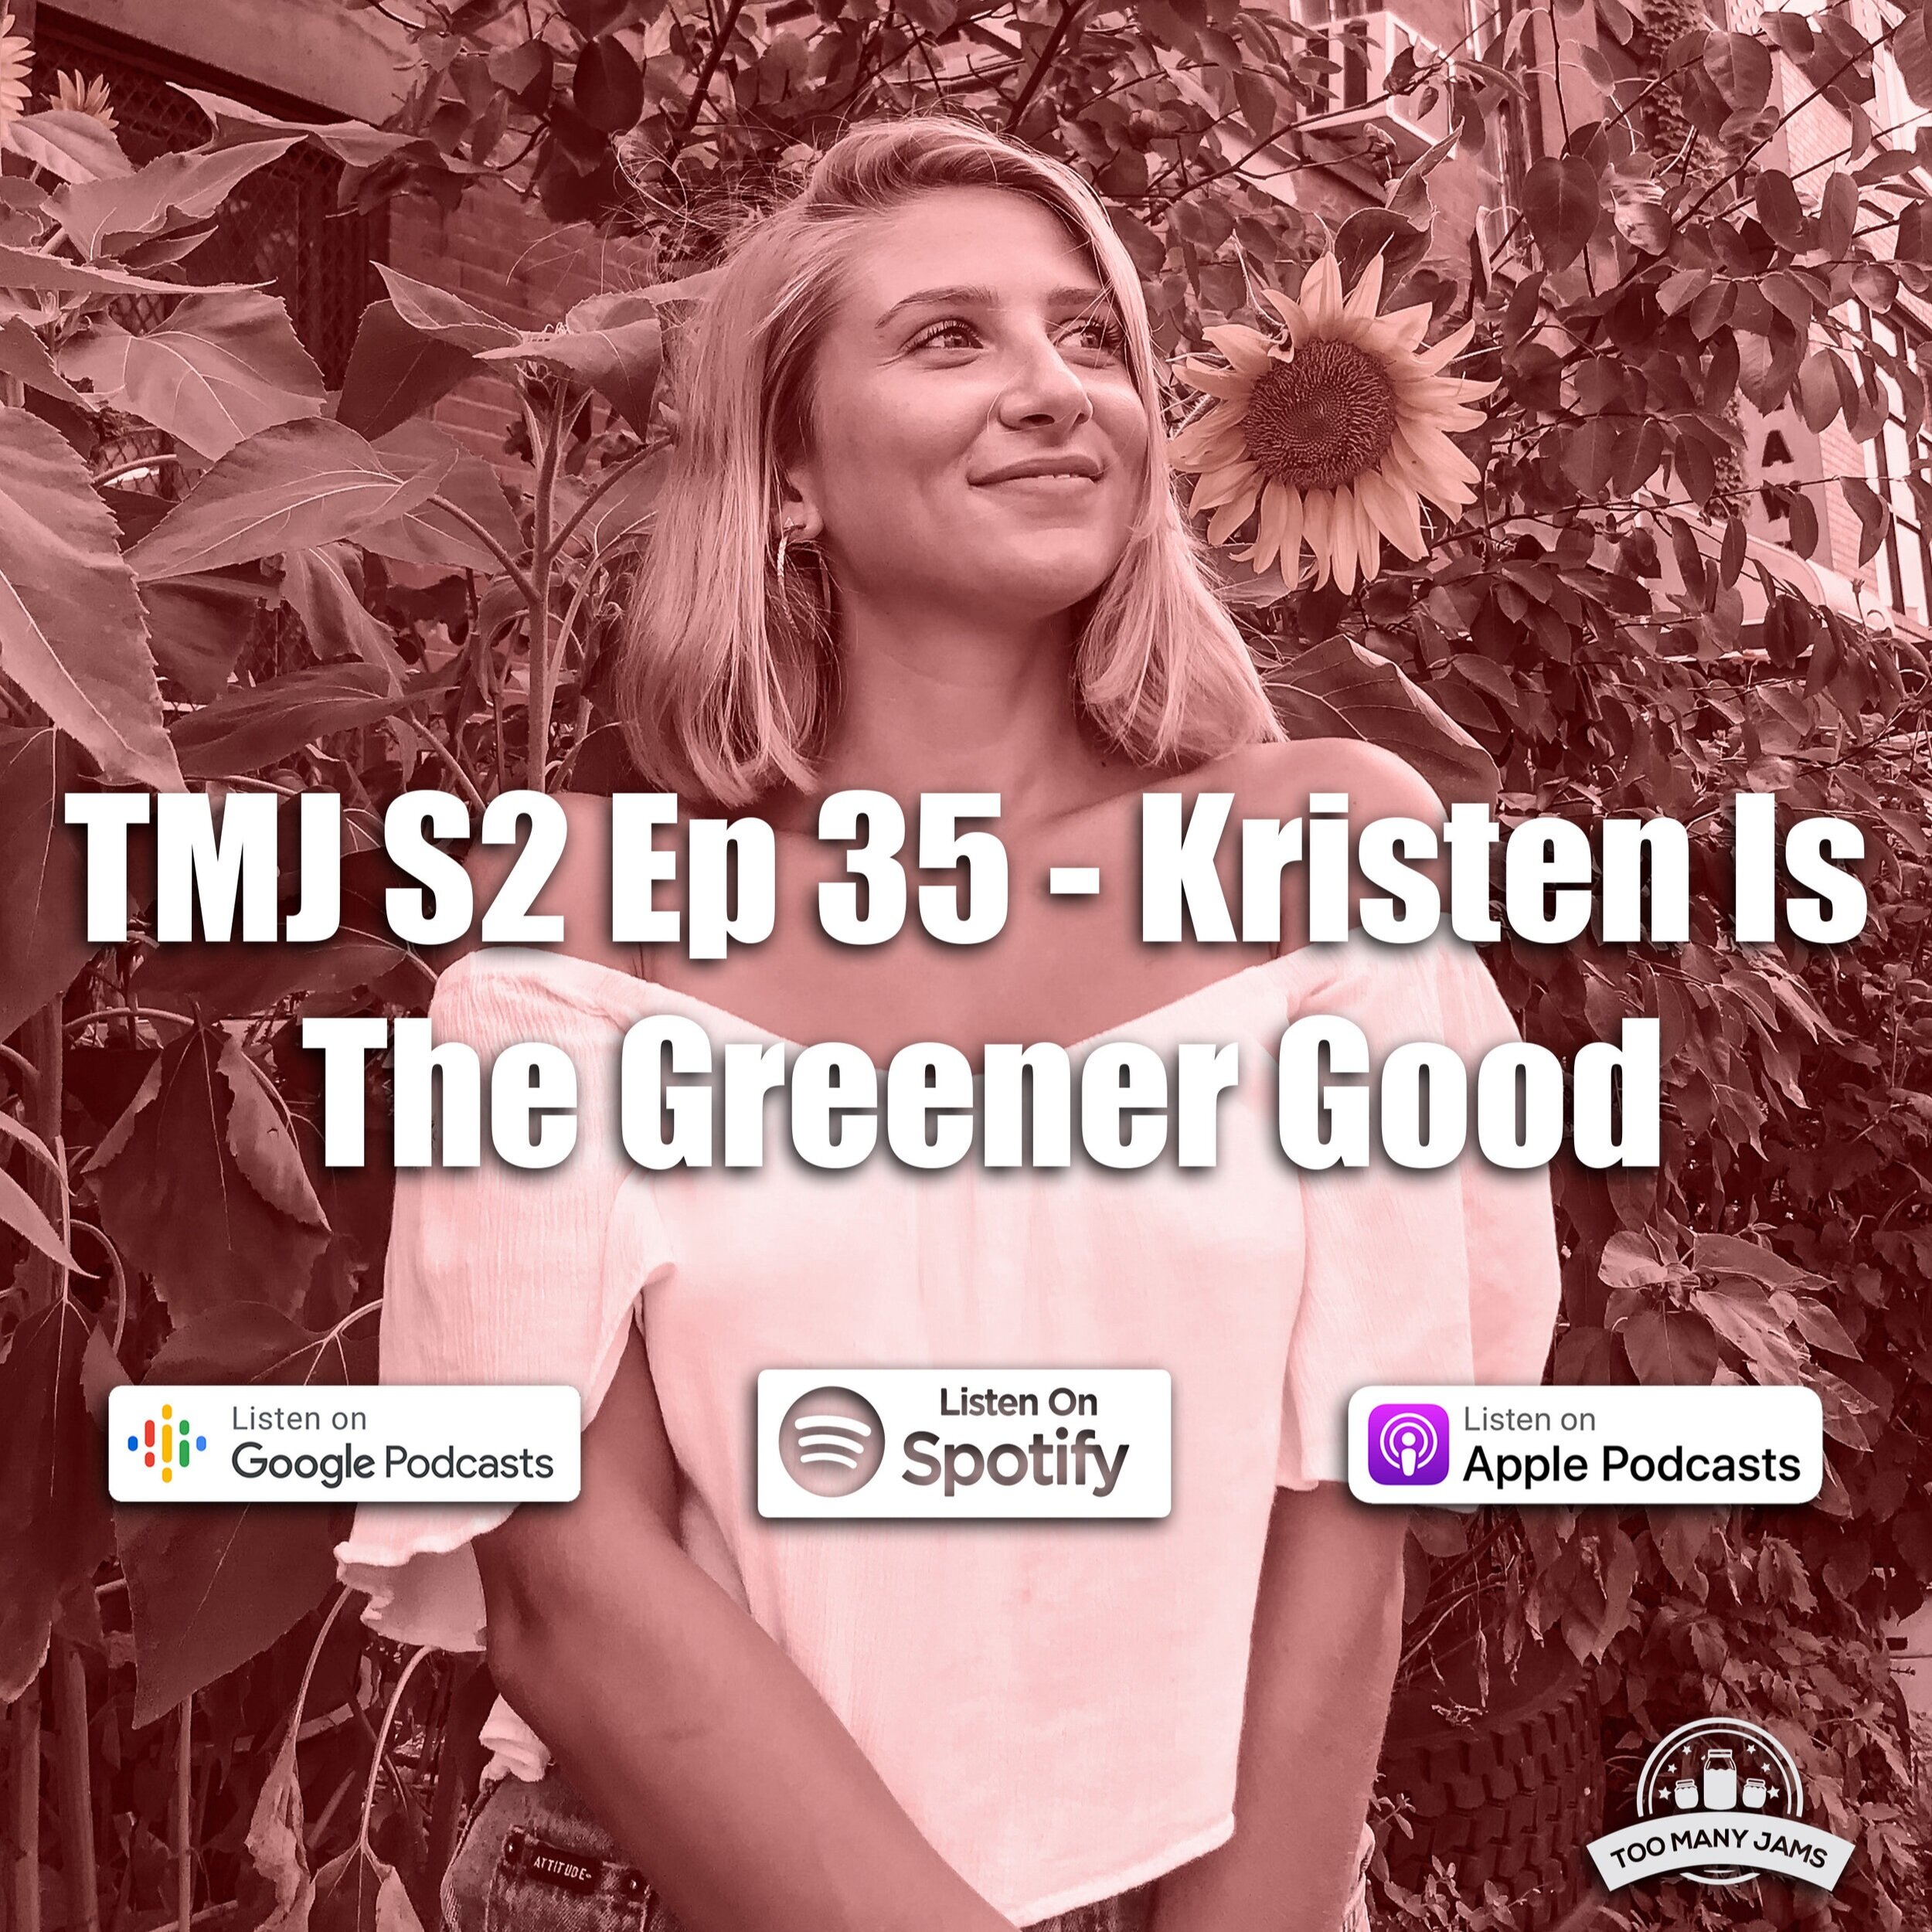 Kristen+Podcast+Thumbnail.jpg